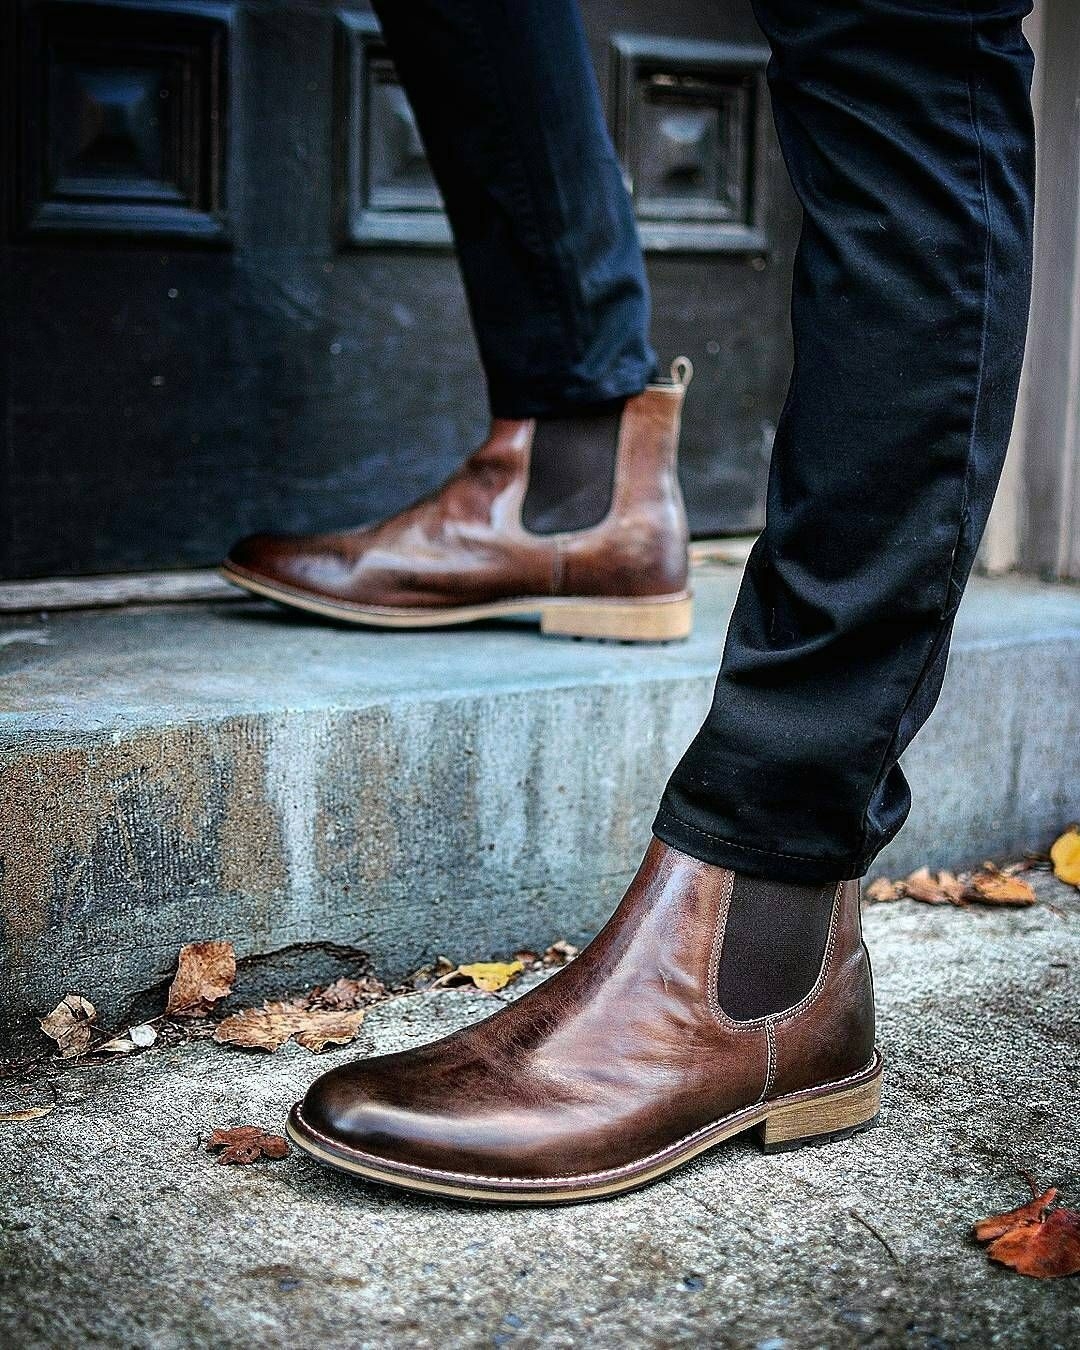 Мужские ботинки 2021 тренды. Модели мужской обуви